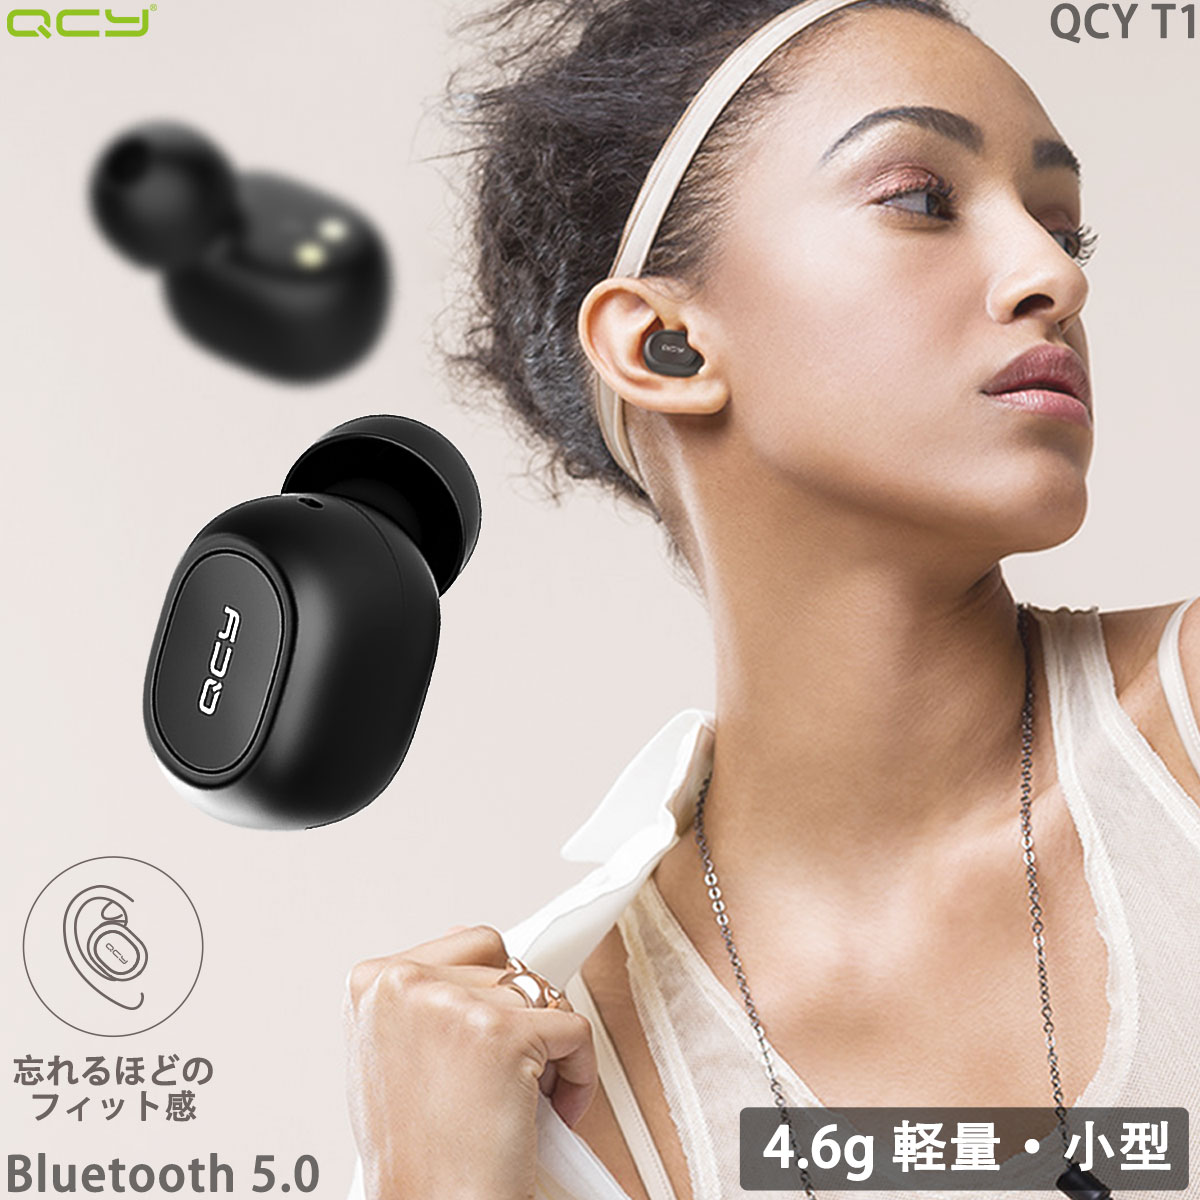 ビーム 上級 Qcy イヤホン Bluetooth Smartcare Tachibana Jp